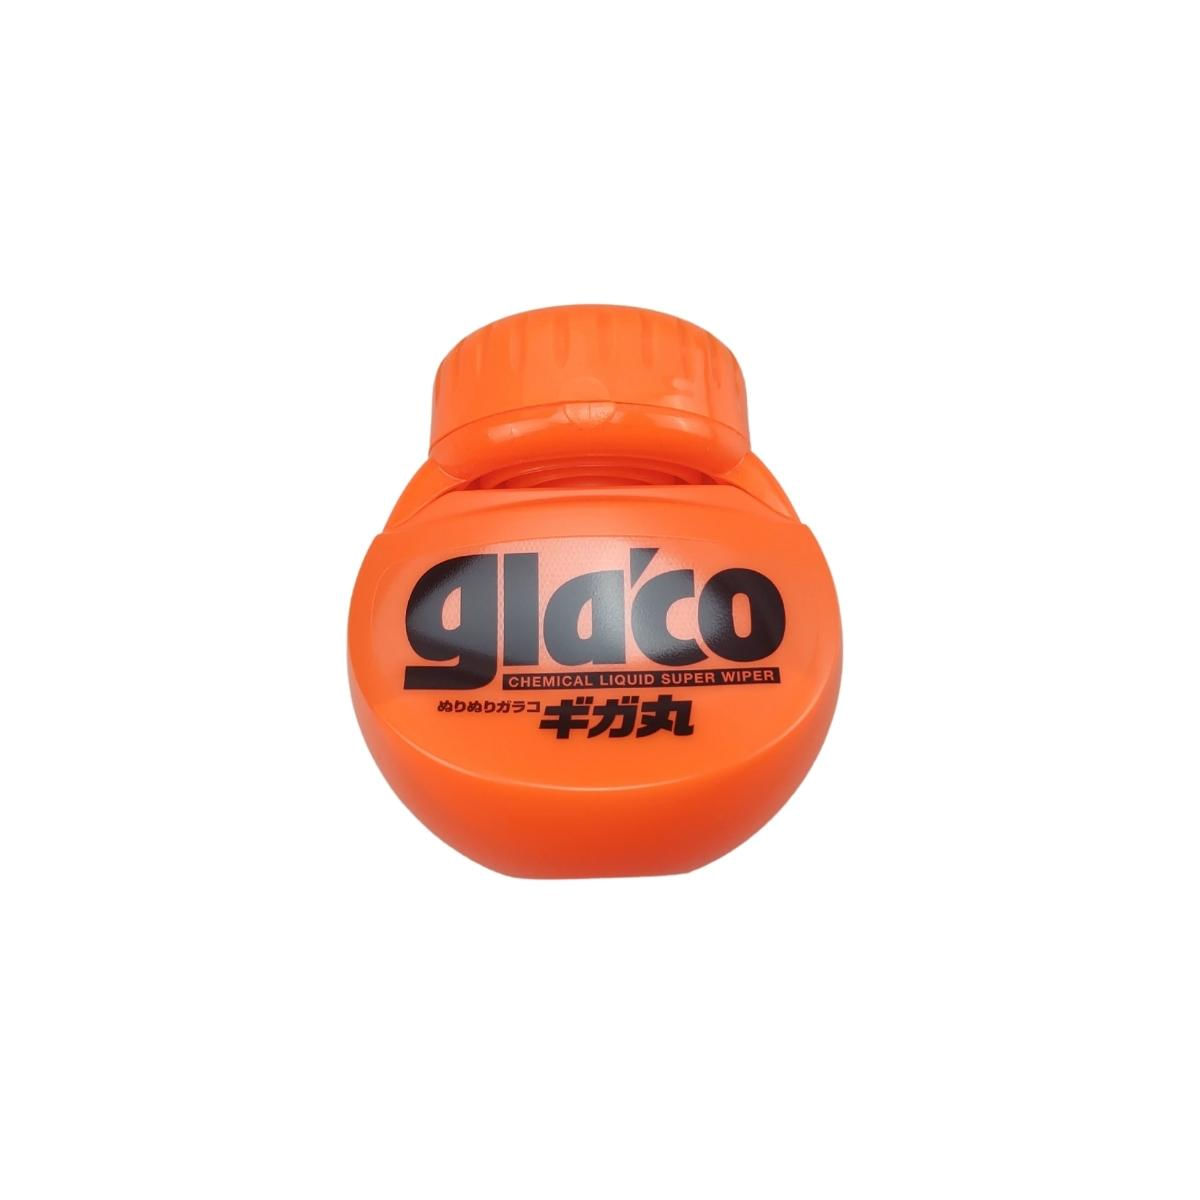 Glaco Cristalizado Repelente Para-Brisa Glaco Max 300 Soft99